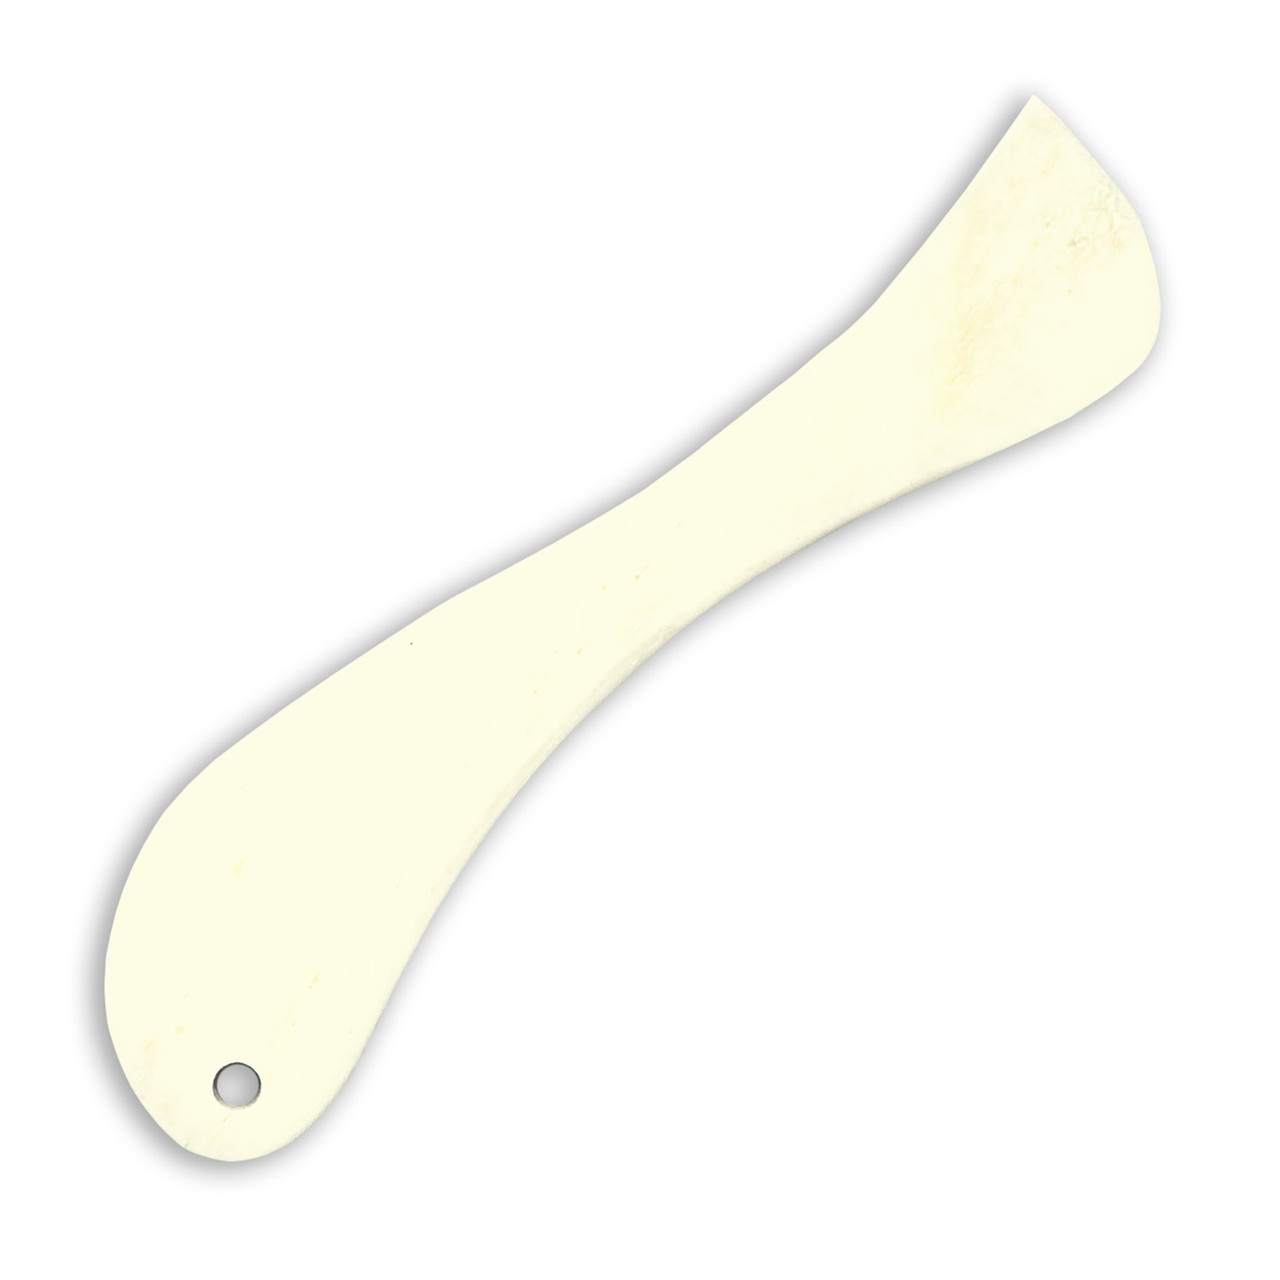 Bone Folder Curved Scoring Tool